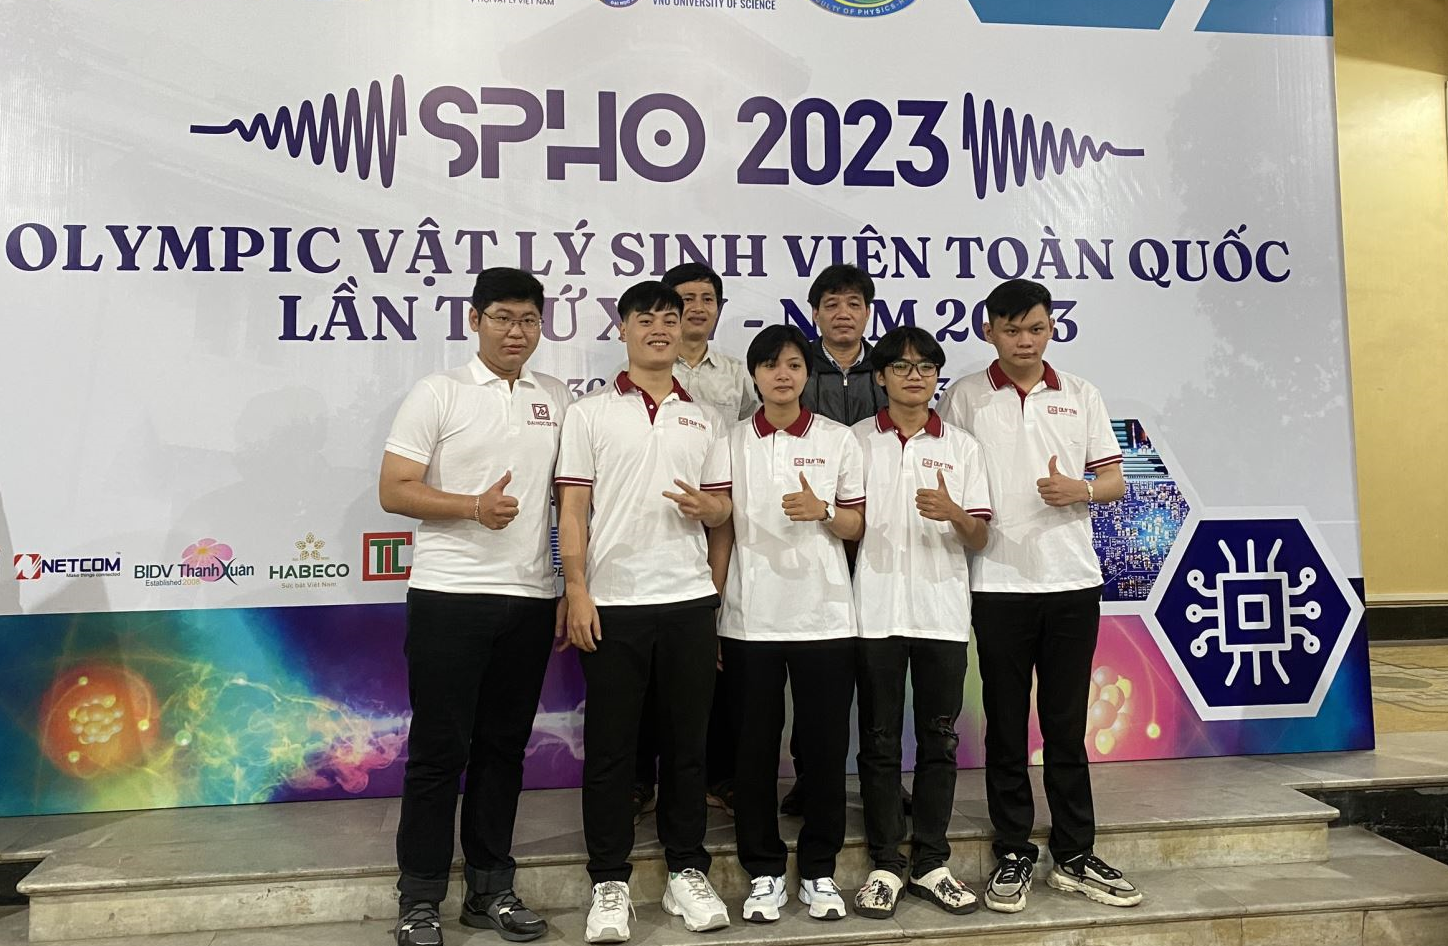 Thành công rực rỡ của đoàn trường Đại học Duy Tân tham gia Olympic Vật lý sinh viên toàn quốc lần XXV - 2023